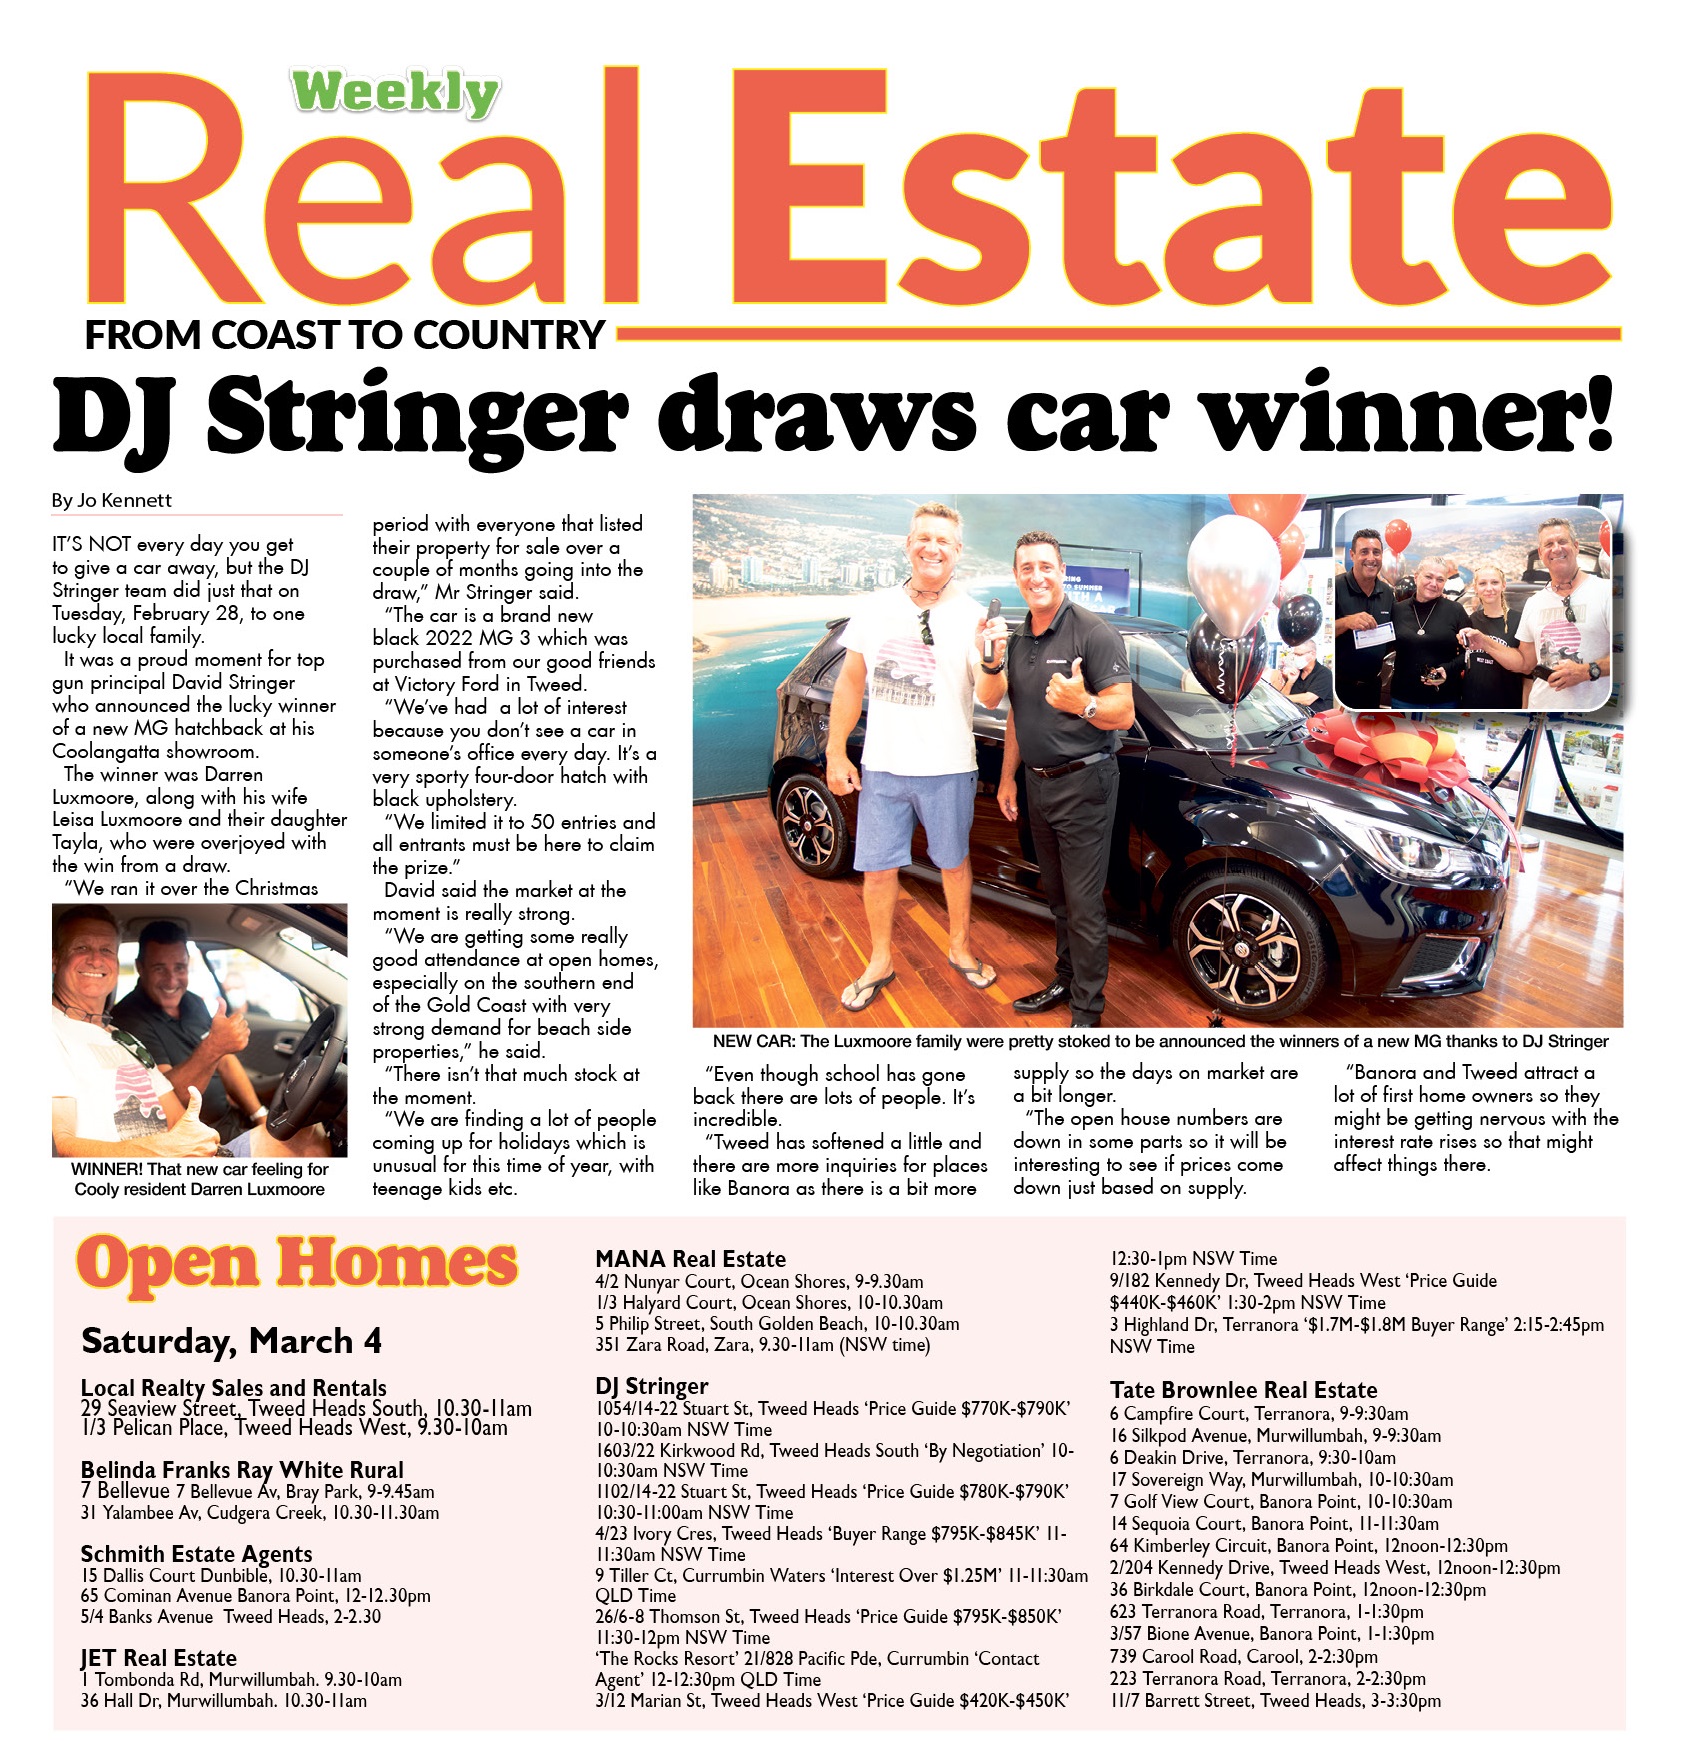 DJ Stringer draws car winner